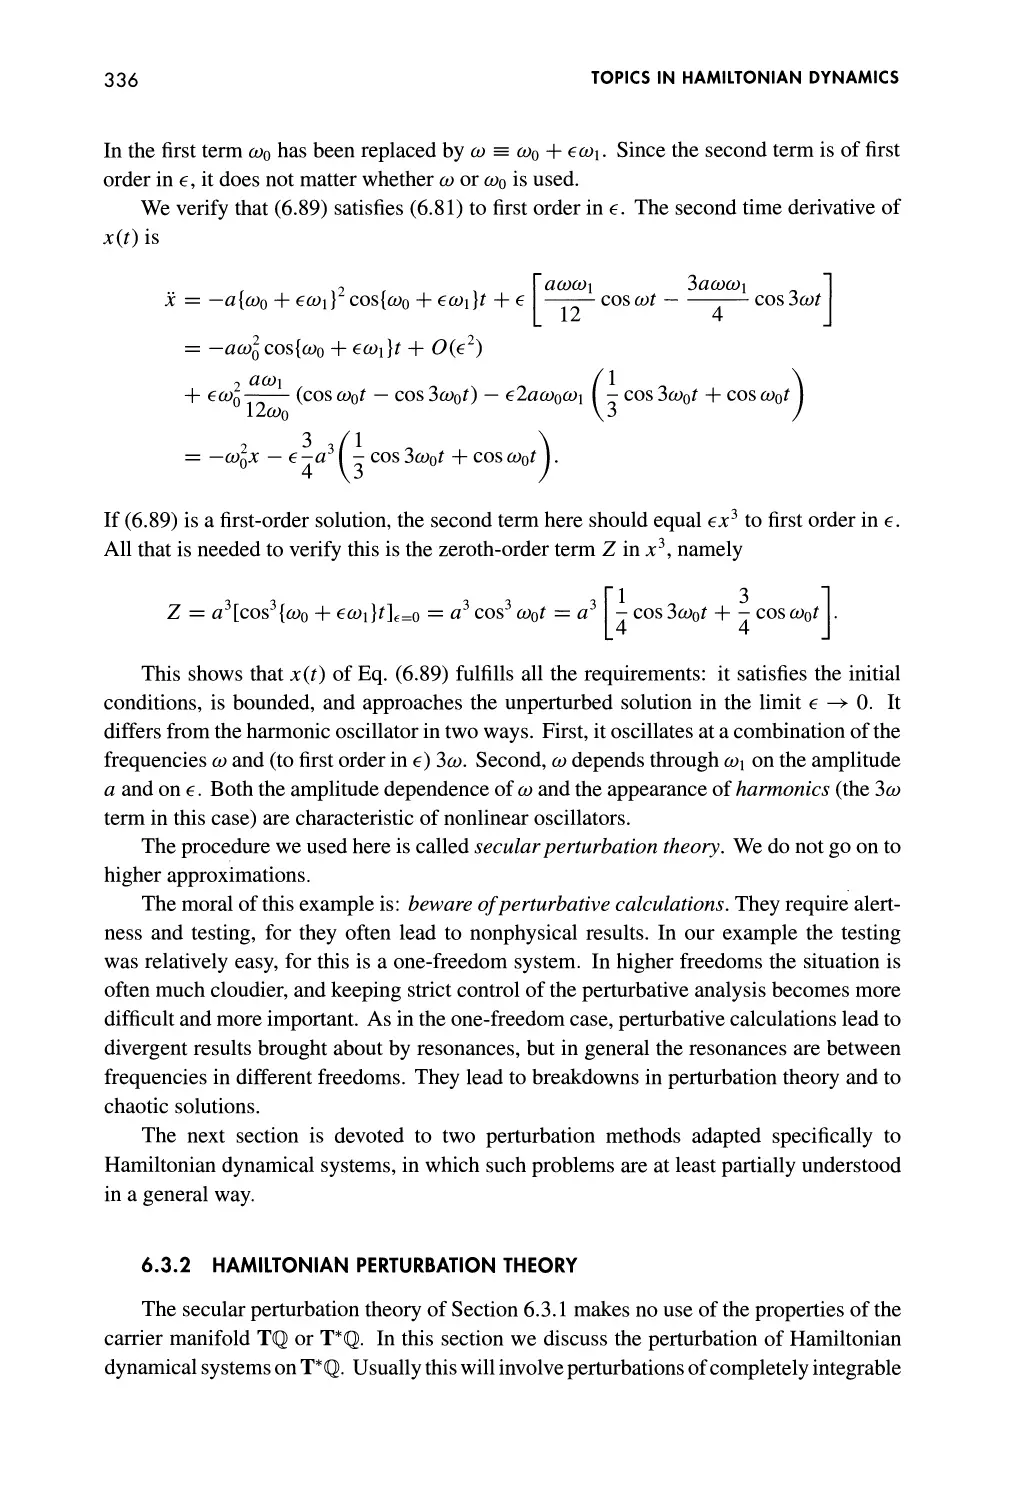 6.3.2 Hamiltonian Perturbation Theory